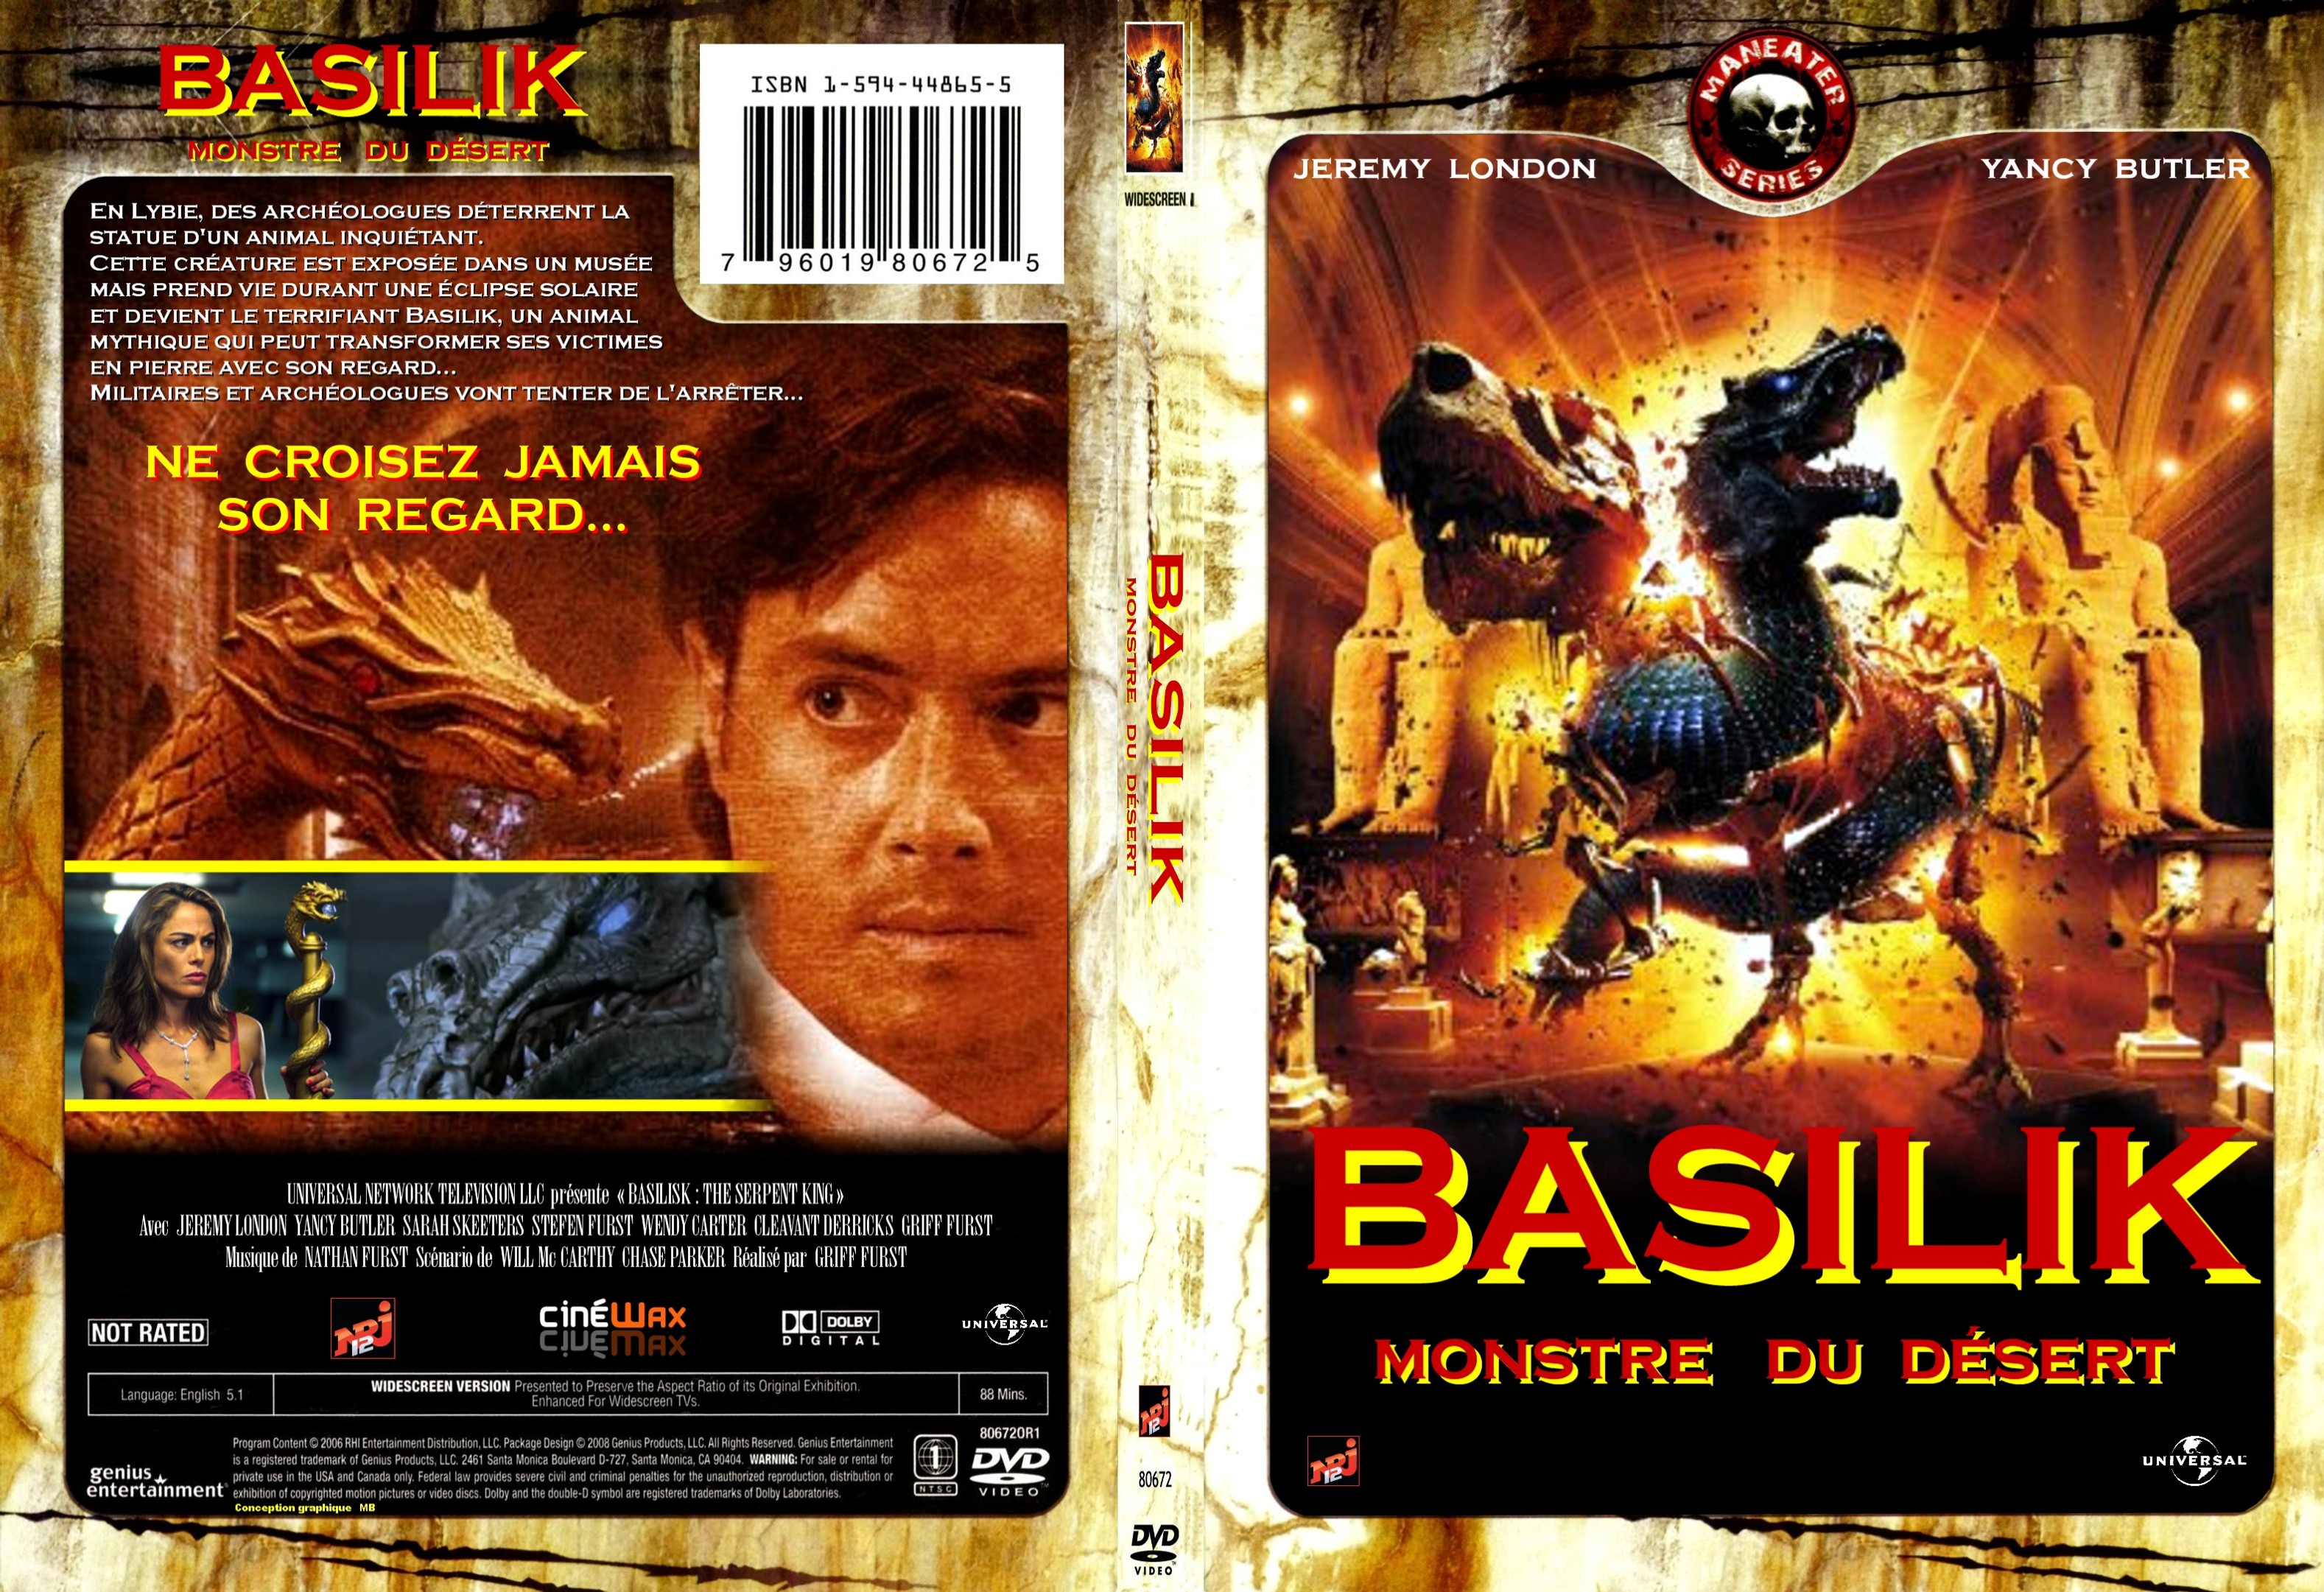 Jaquette DVD Basilik monstre du desert custom - SLIM